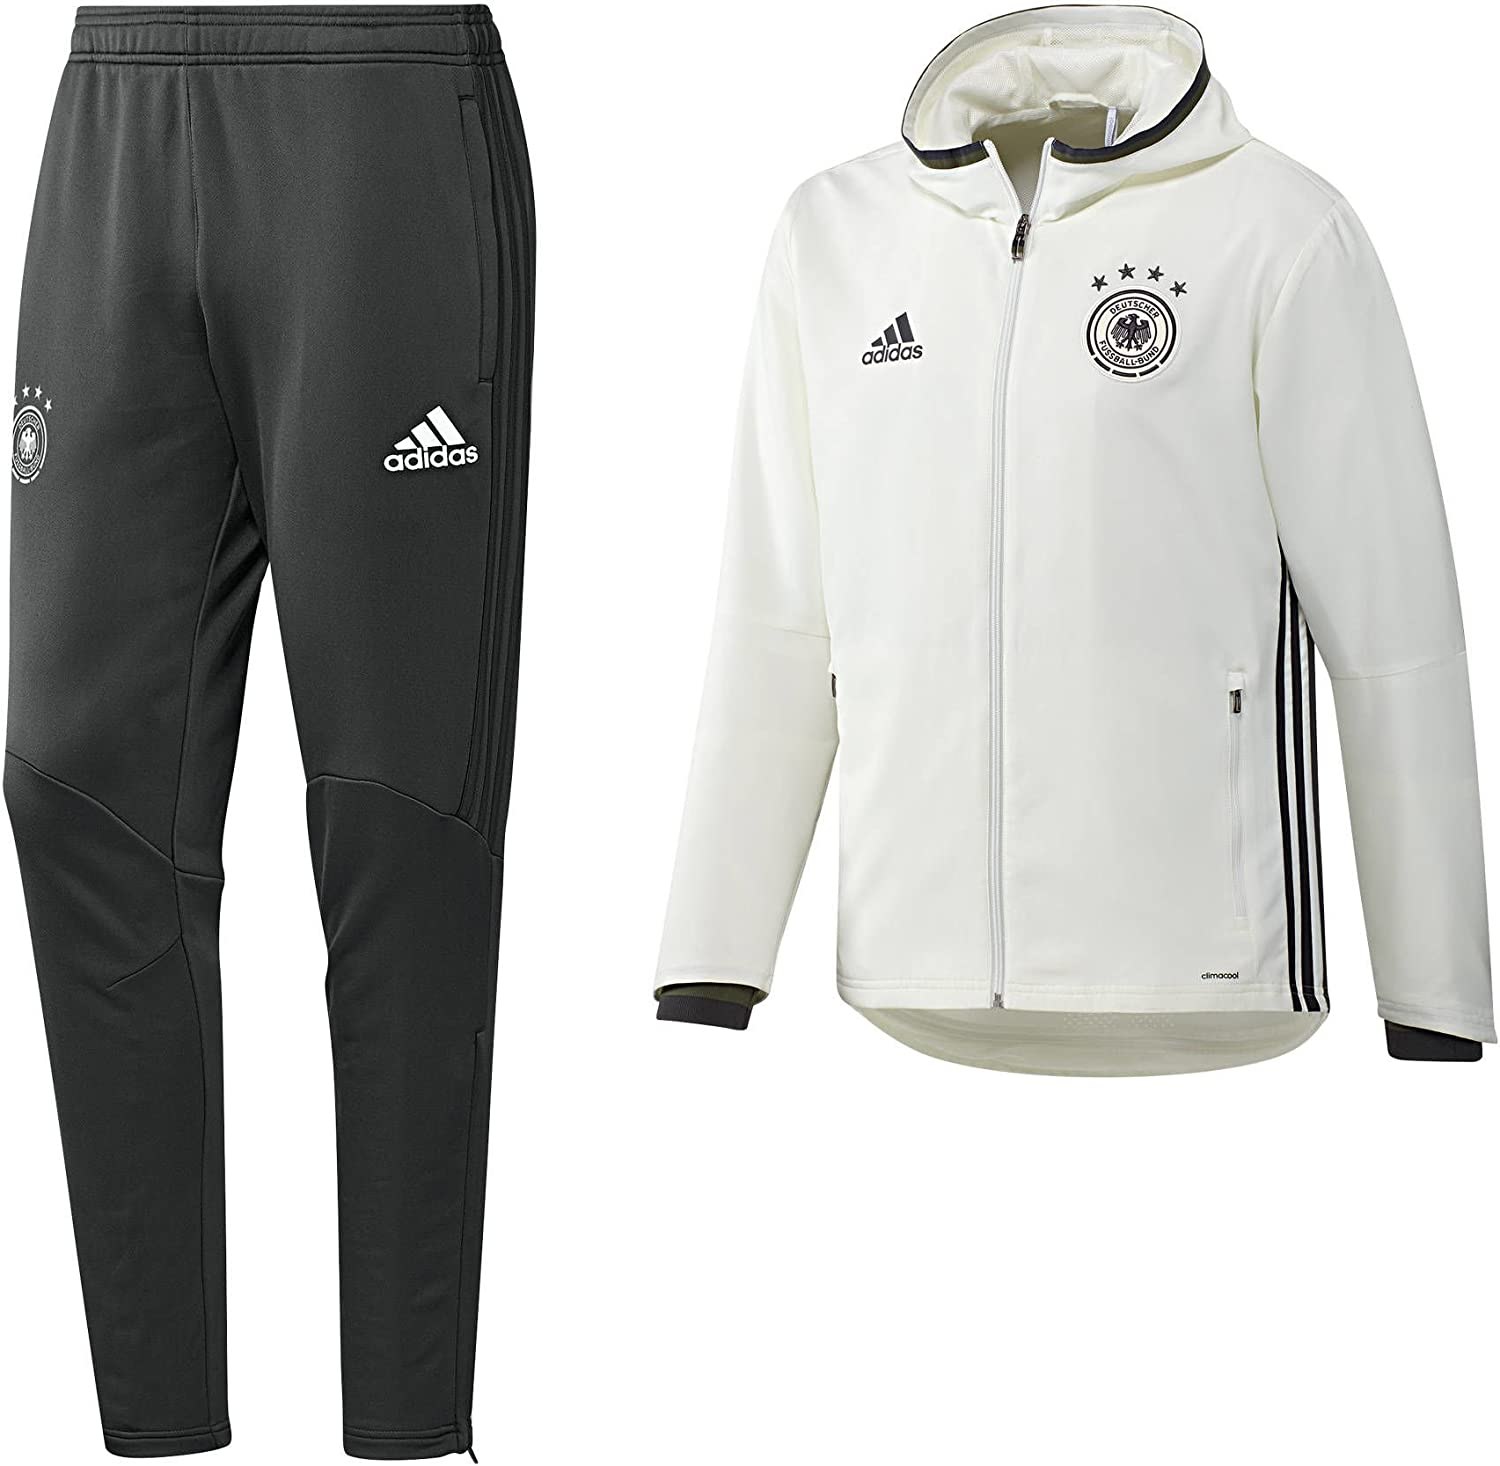 Адидас оригинал германия. Костюм адидас Германка. Adidas DFB сборной Германии костюмы. Костюм адидас DFB. Спортивный костюм мужской Германка.